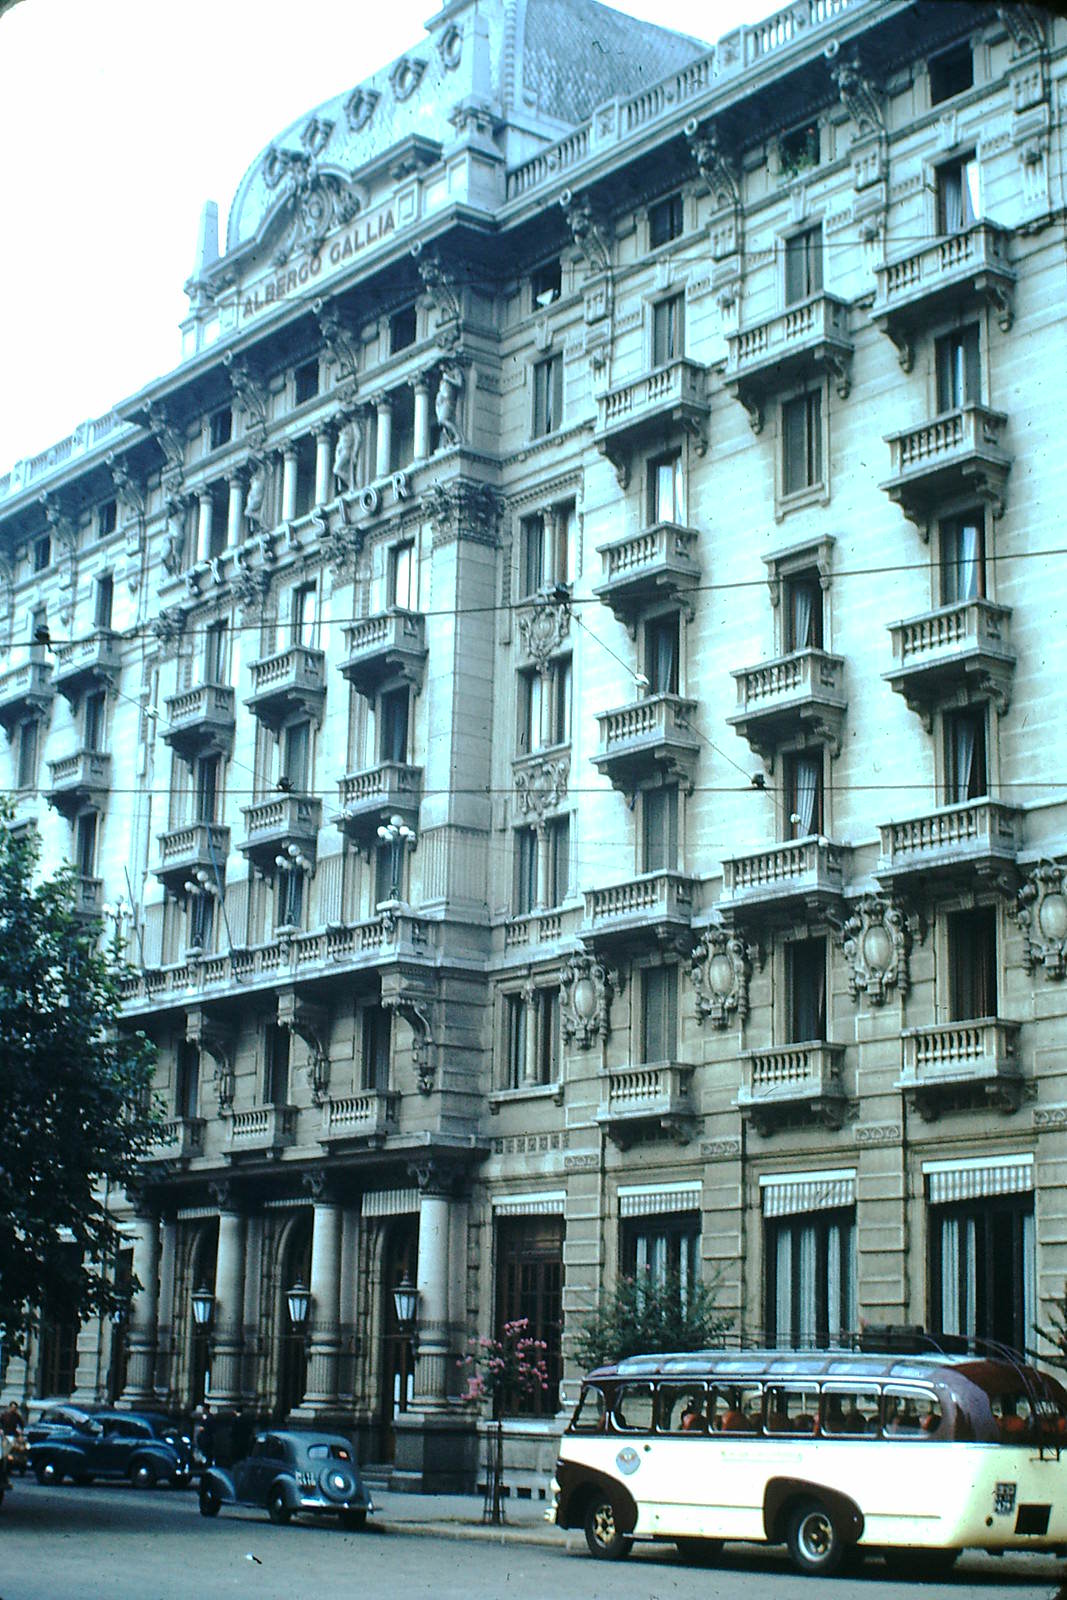 Hotel Excelsior, Milan, 1954